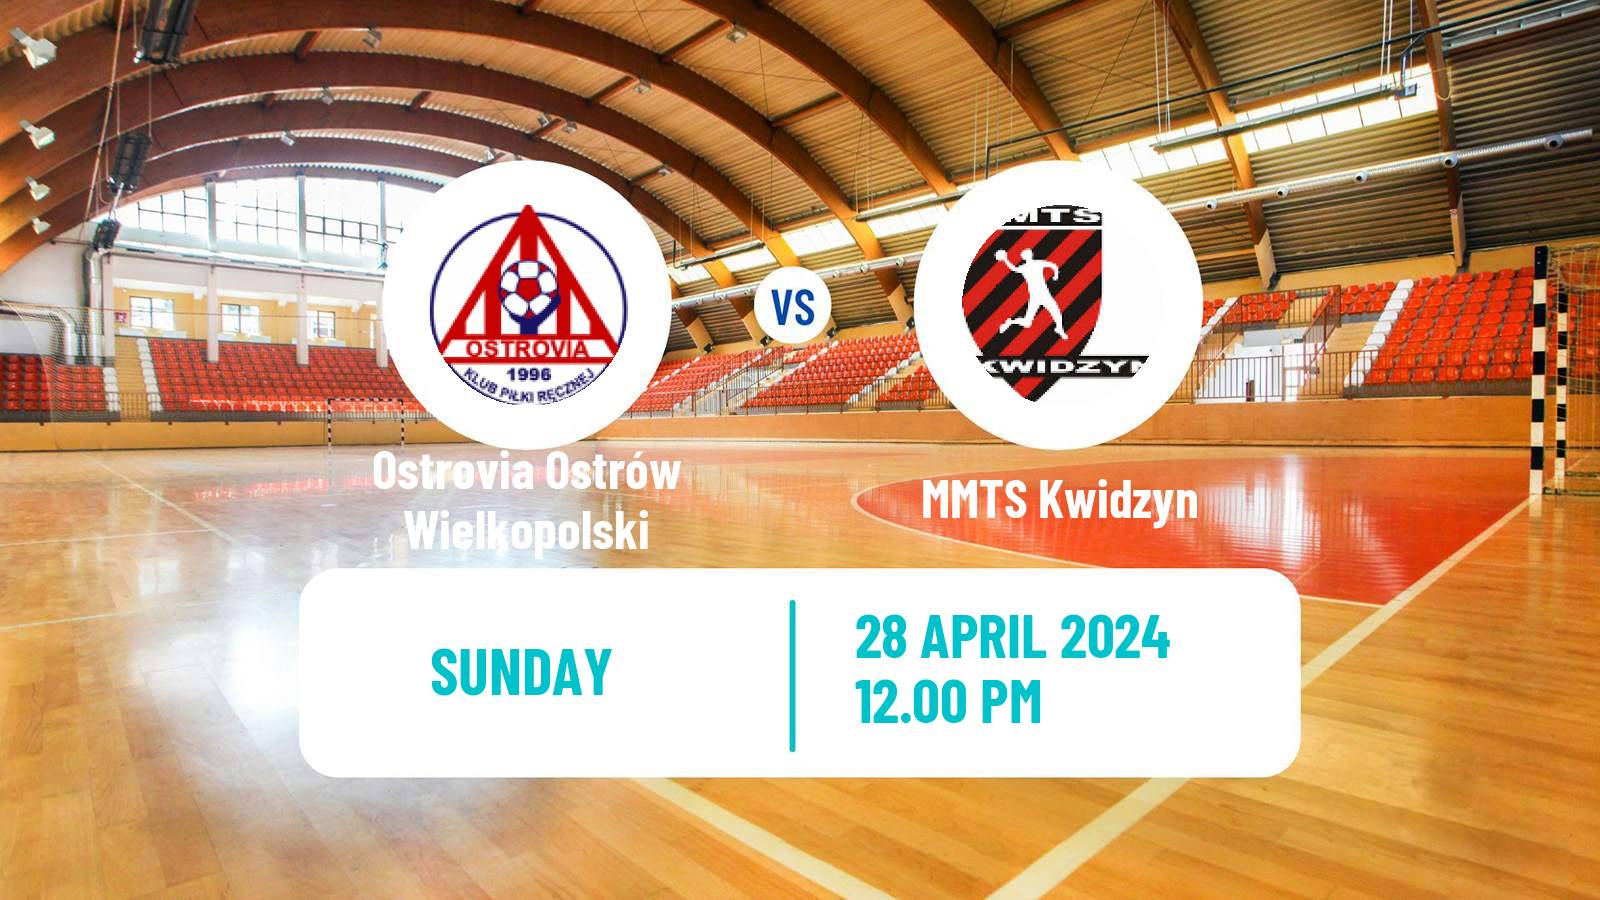 Handball Polish Superliga Handball Ostrovia Ostrów Wielkopolski - MMTS Kwidzyn